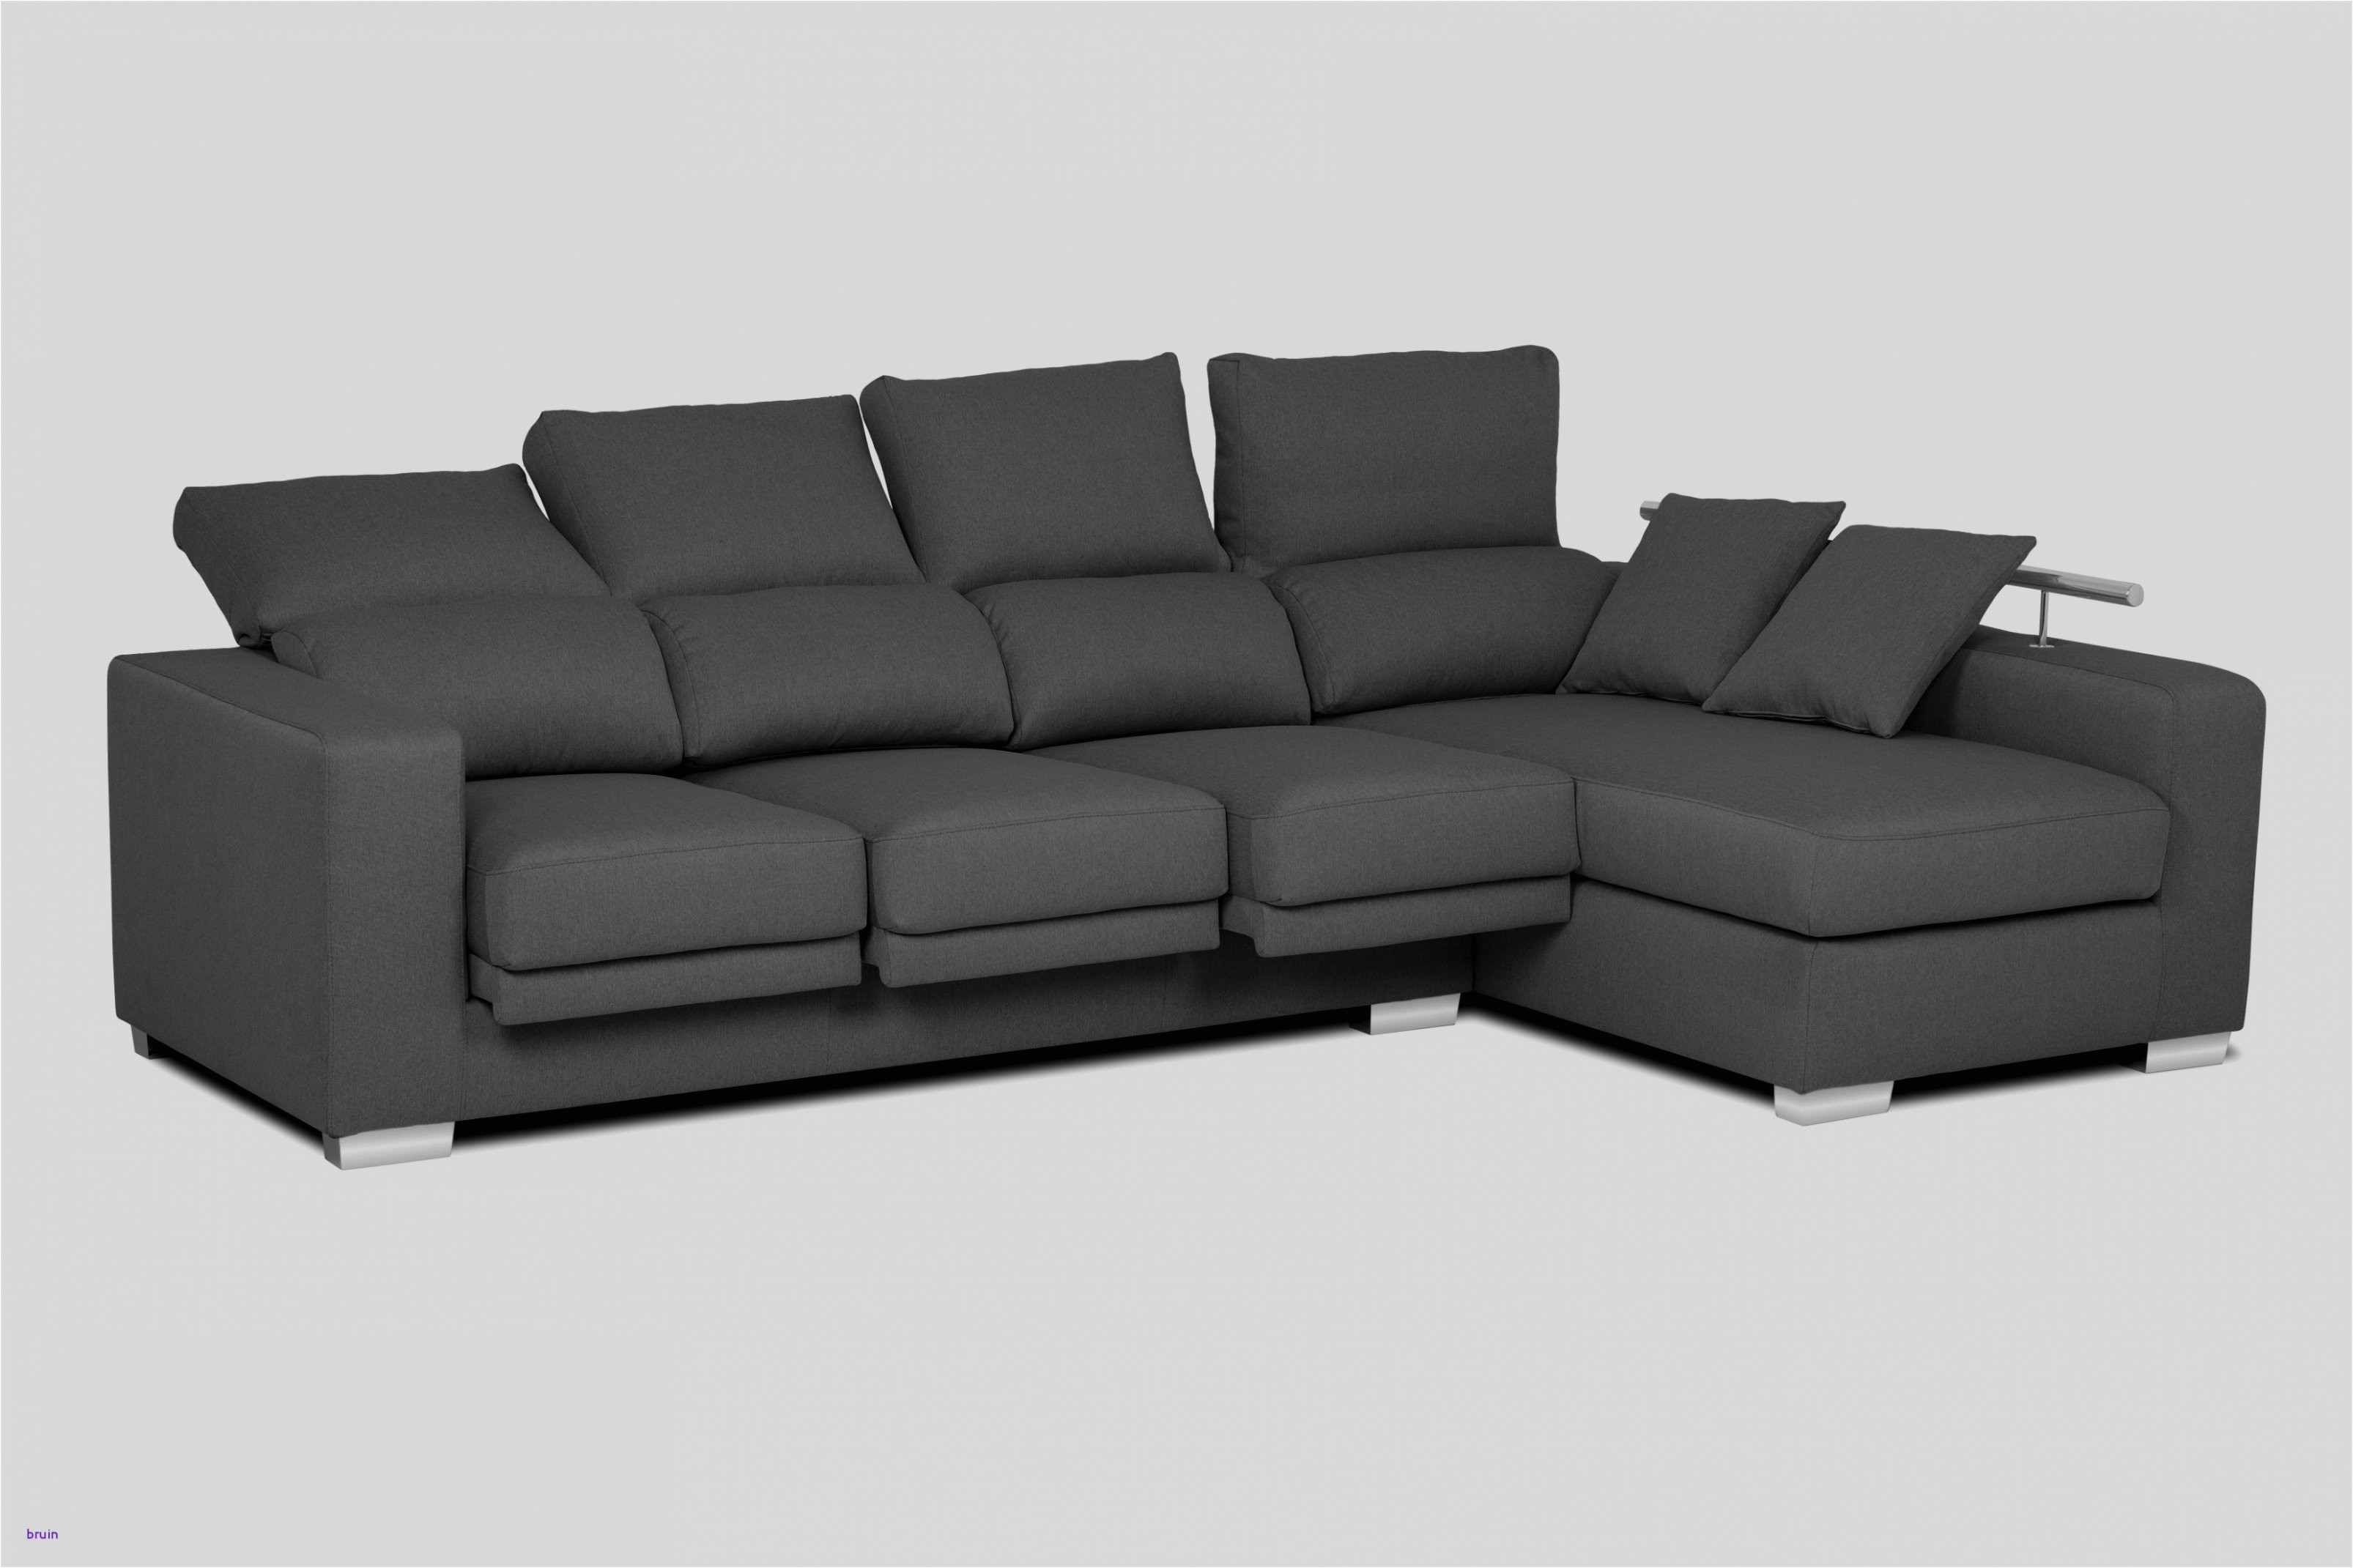 25 agradable sofas baratos mallorca